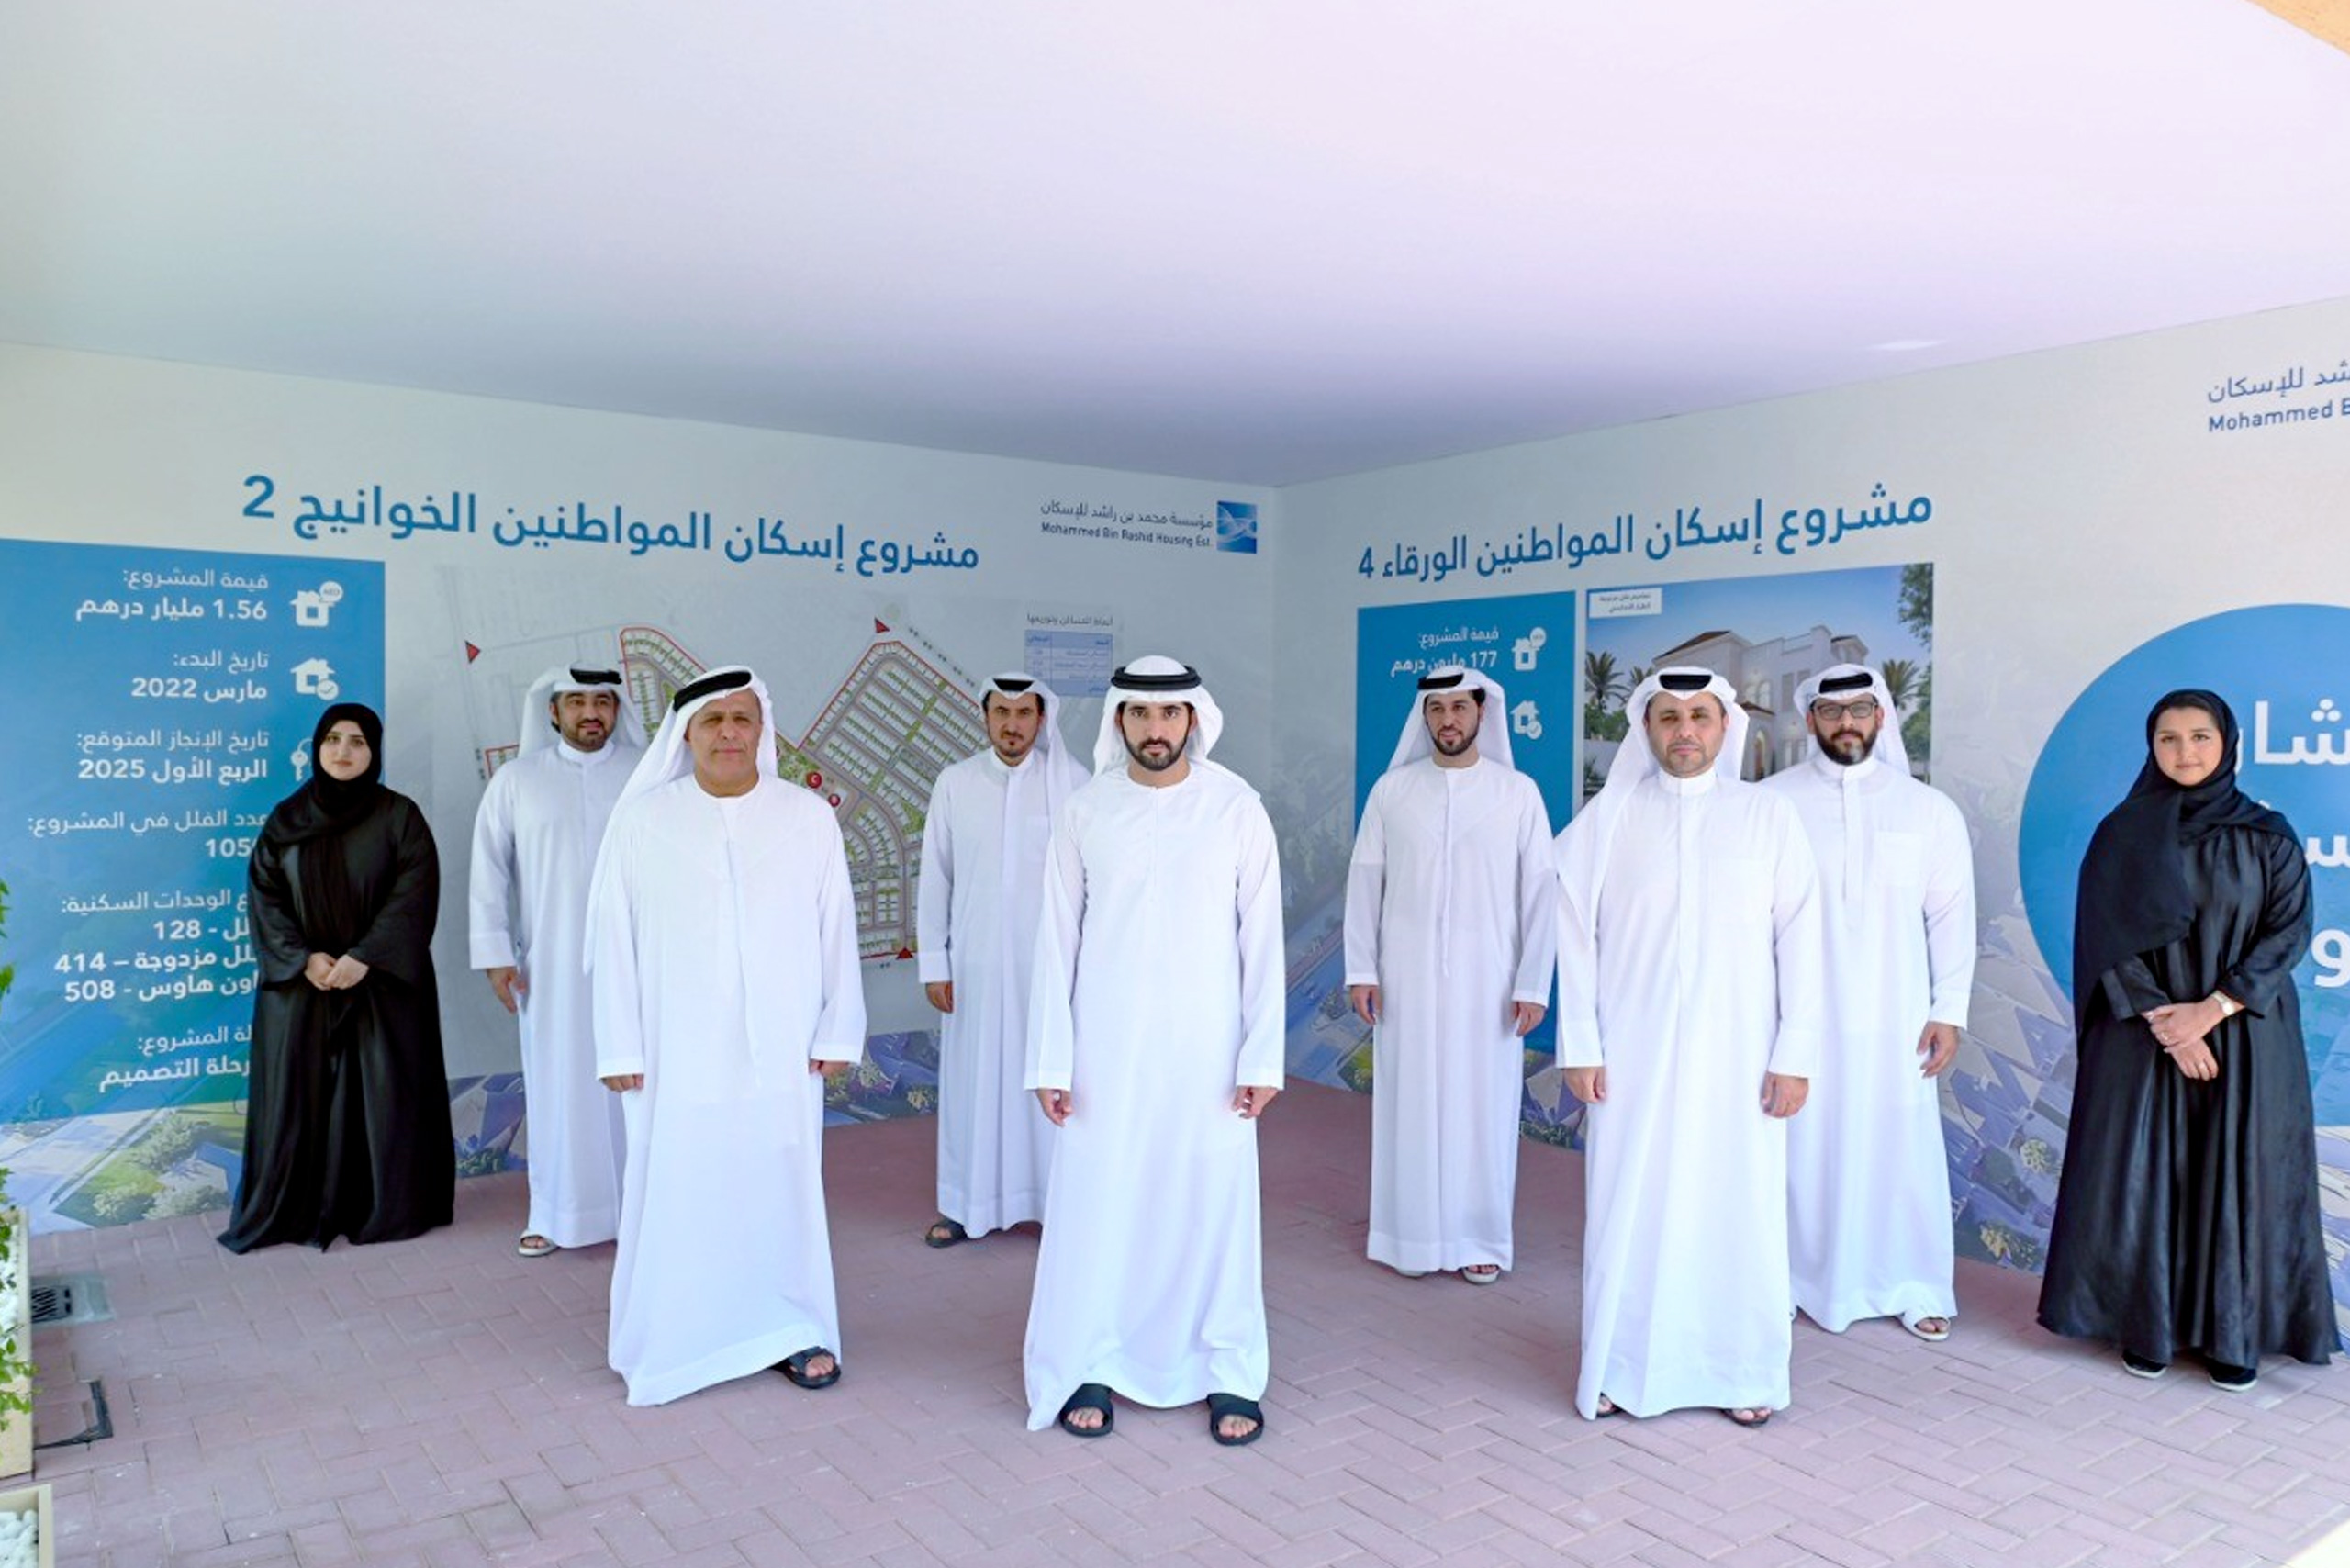 حمدان بن محمد يطلق خطة إسكانية متكاملة لتوفير 15,800 مسكن للمواطنين في دبي خلال الأربع سنوات المقبلة